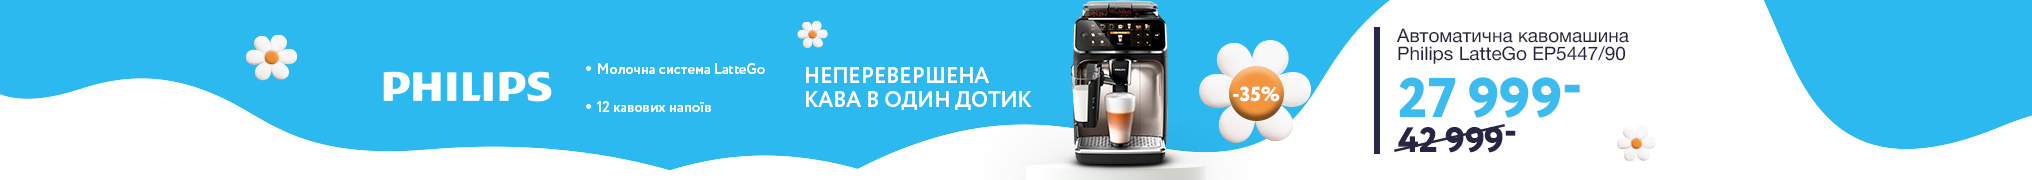 Знижки до -37% на кавомашини Philips LatteGo